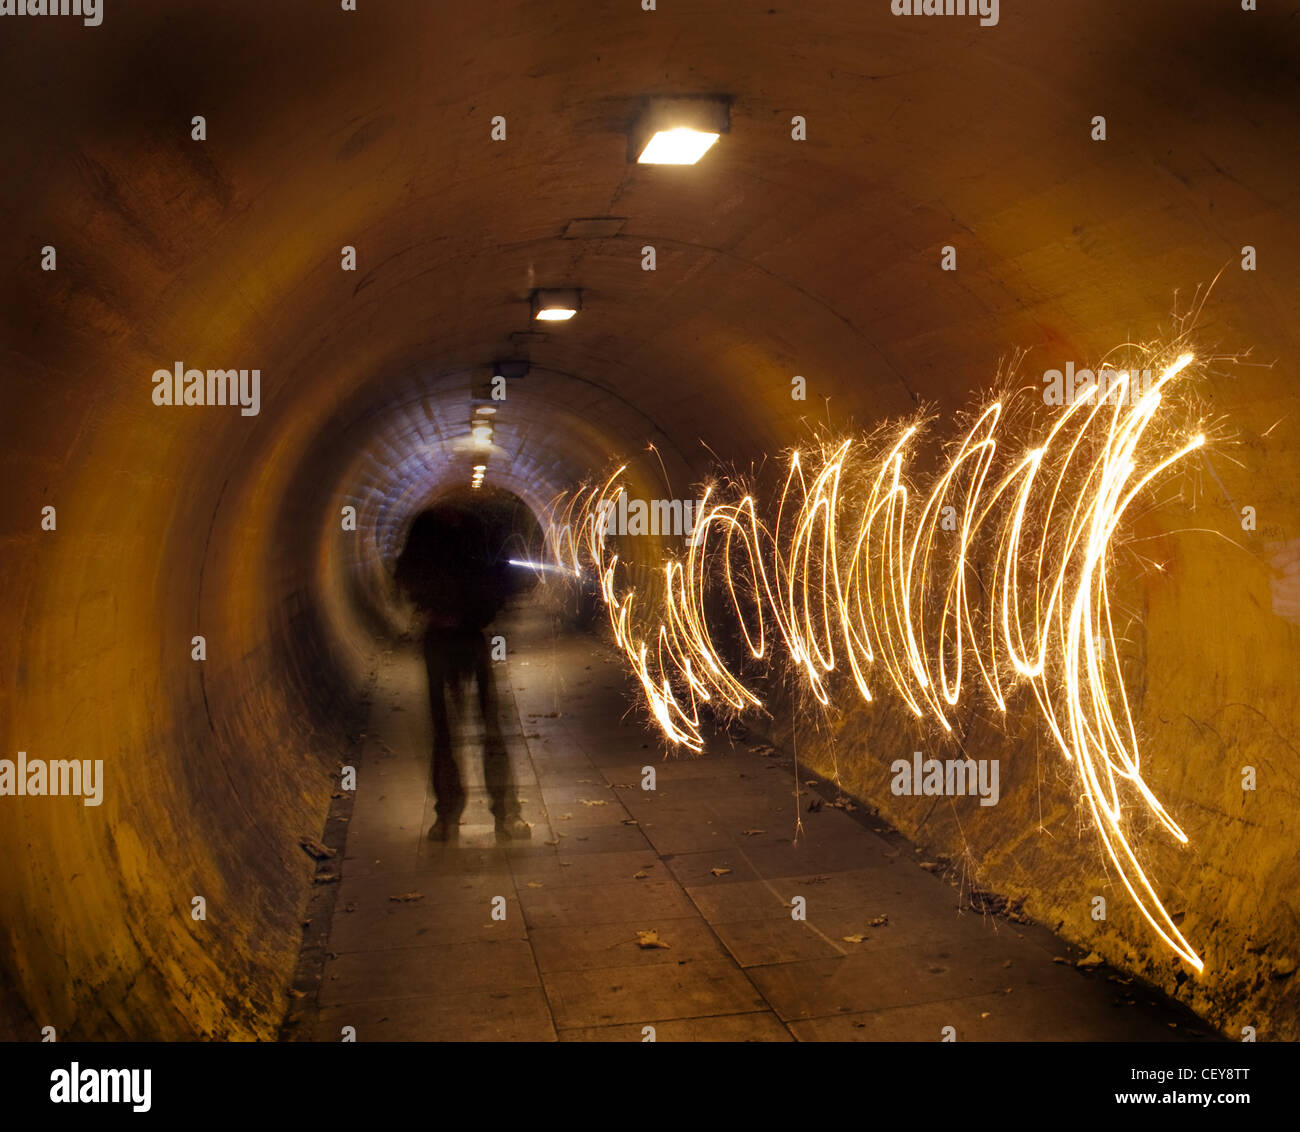 Un homme dans un tunnel souterrain à la vision nocturne de tunnelvision, créant un chemin de lumière Banque D'Images